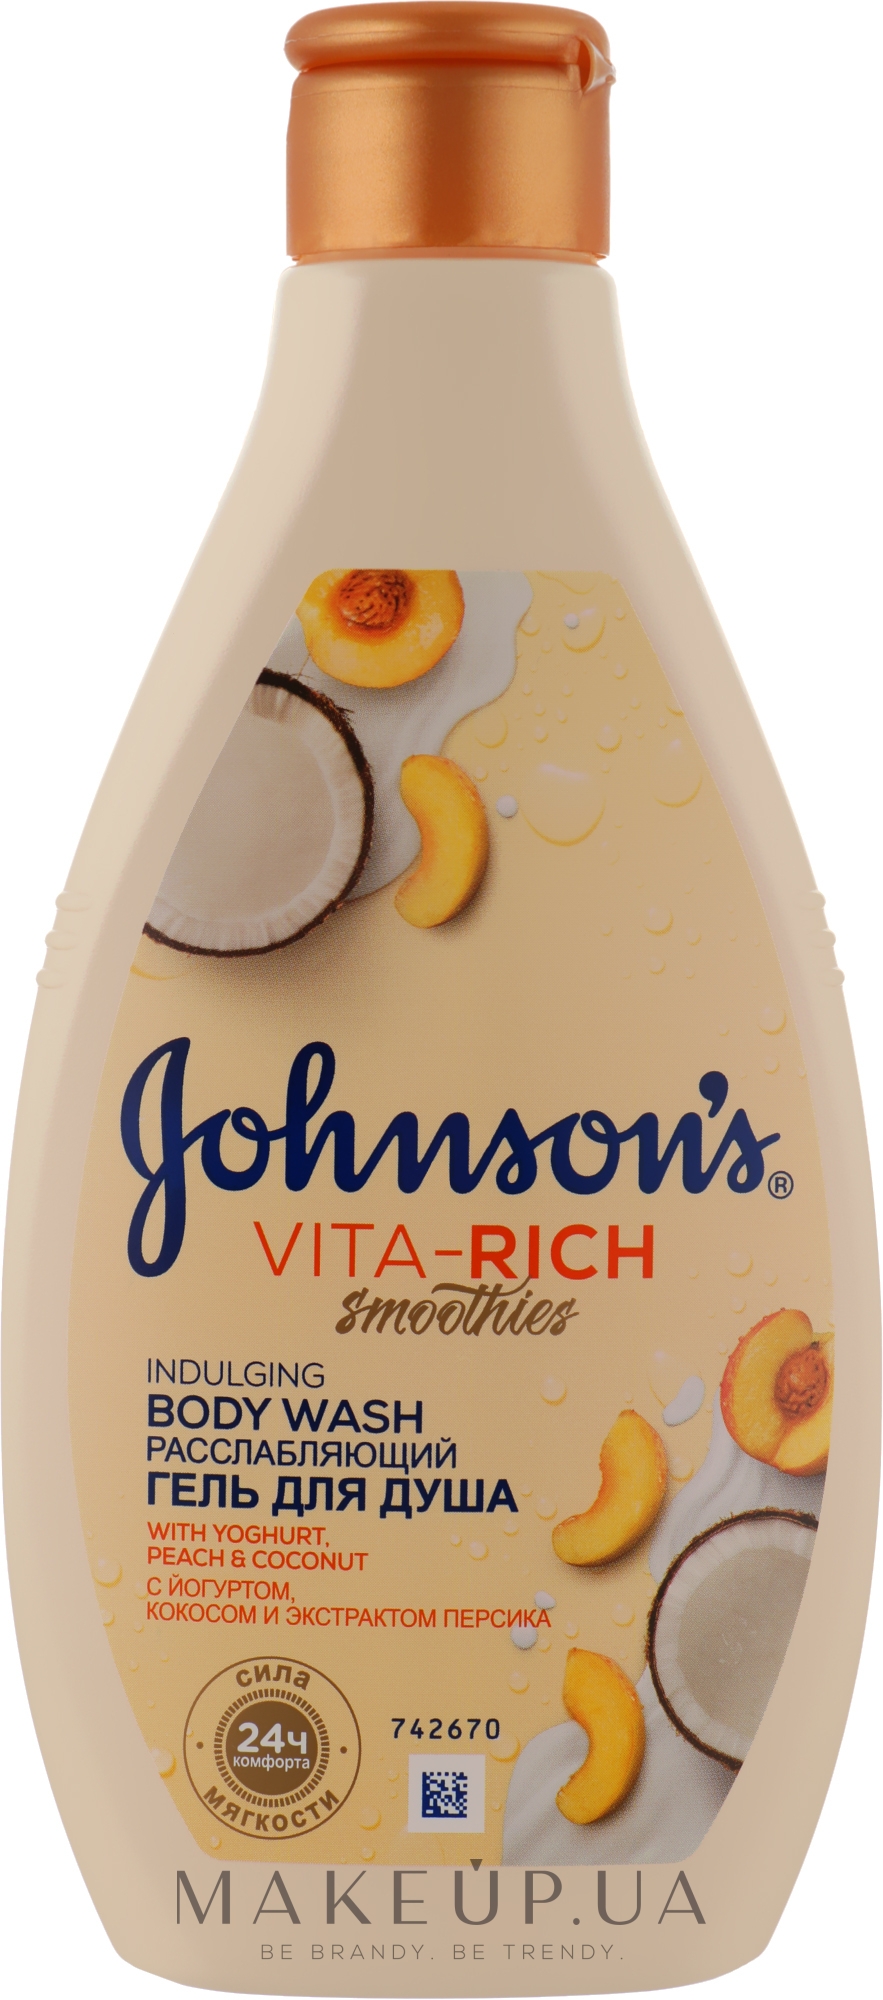 Розслаблювальний гель для душу з йогуртом, кокосом і екстрактом персика - Johnson’s Vita-rich Smoothies — фото 250ml